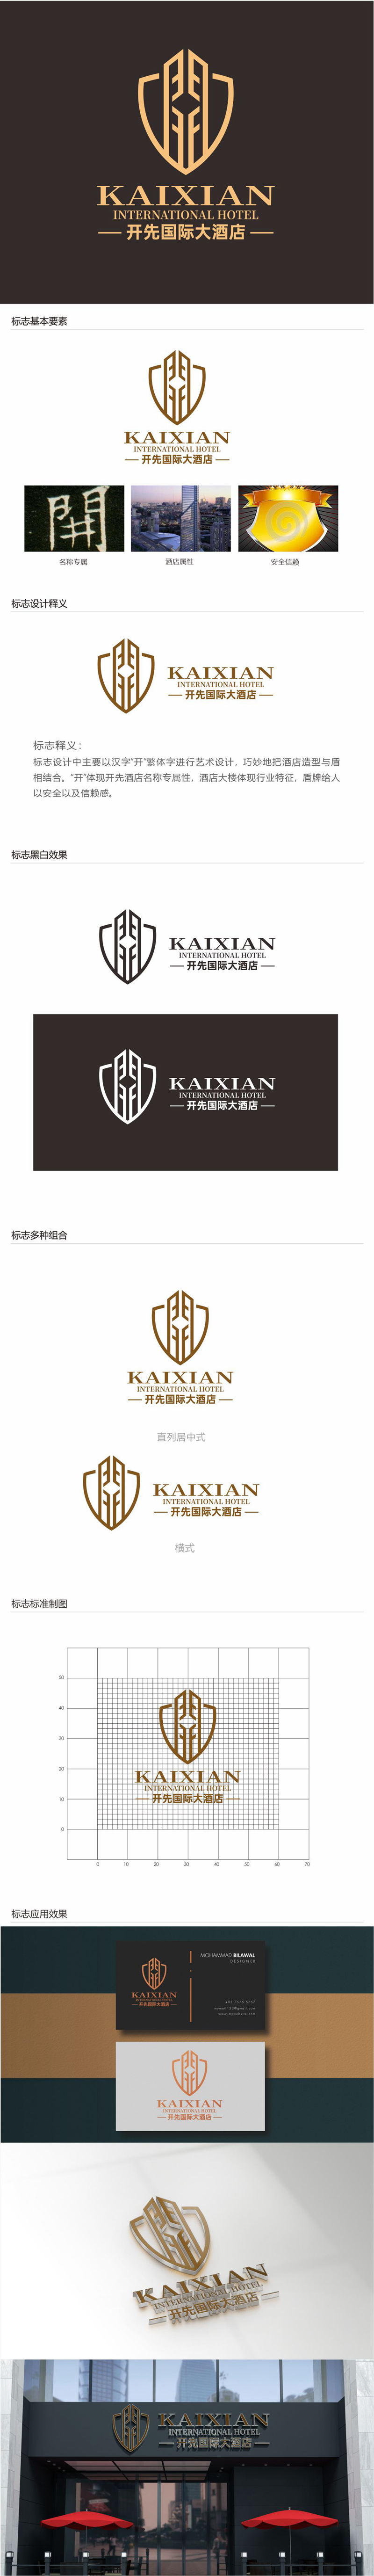 唐国强的开先国际大酒店logo设计